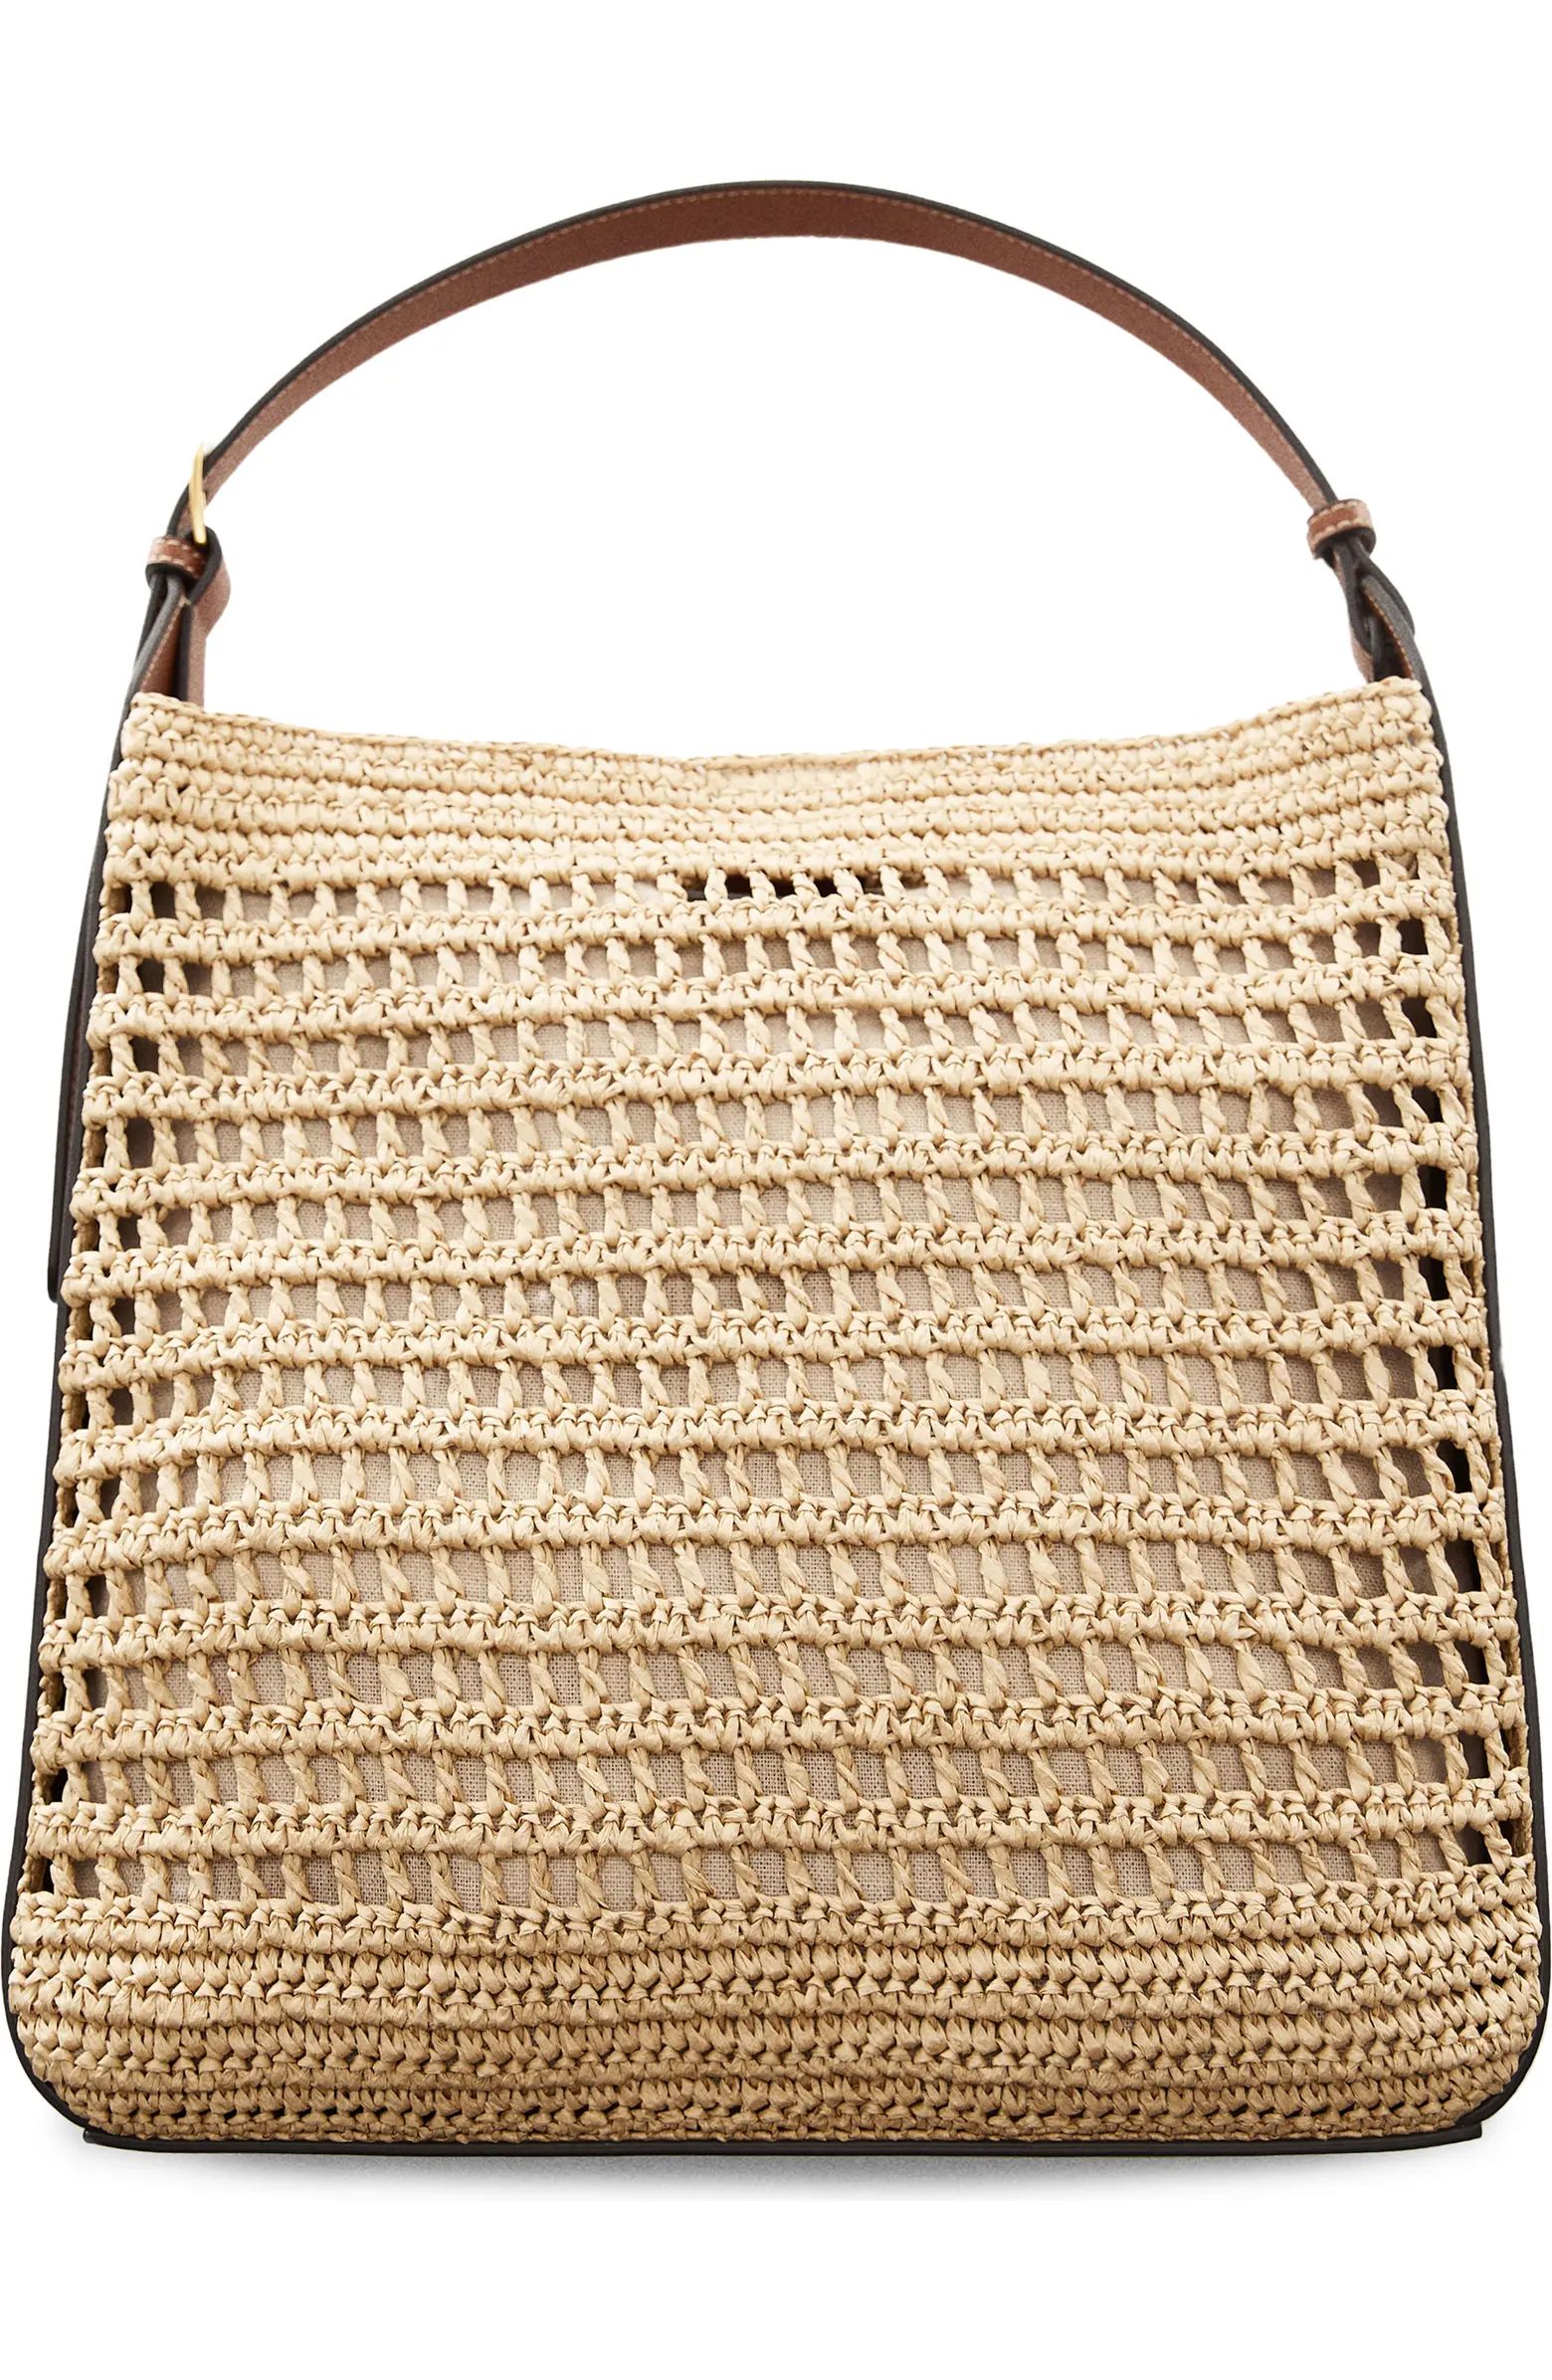 Medium Valeta Crocheted Raffia Bag | Nordstrom